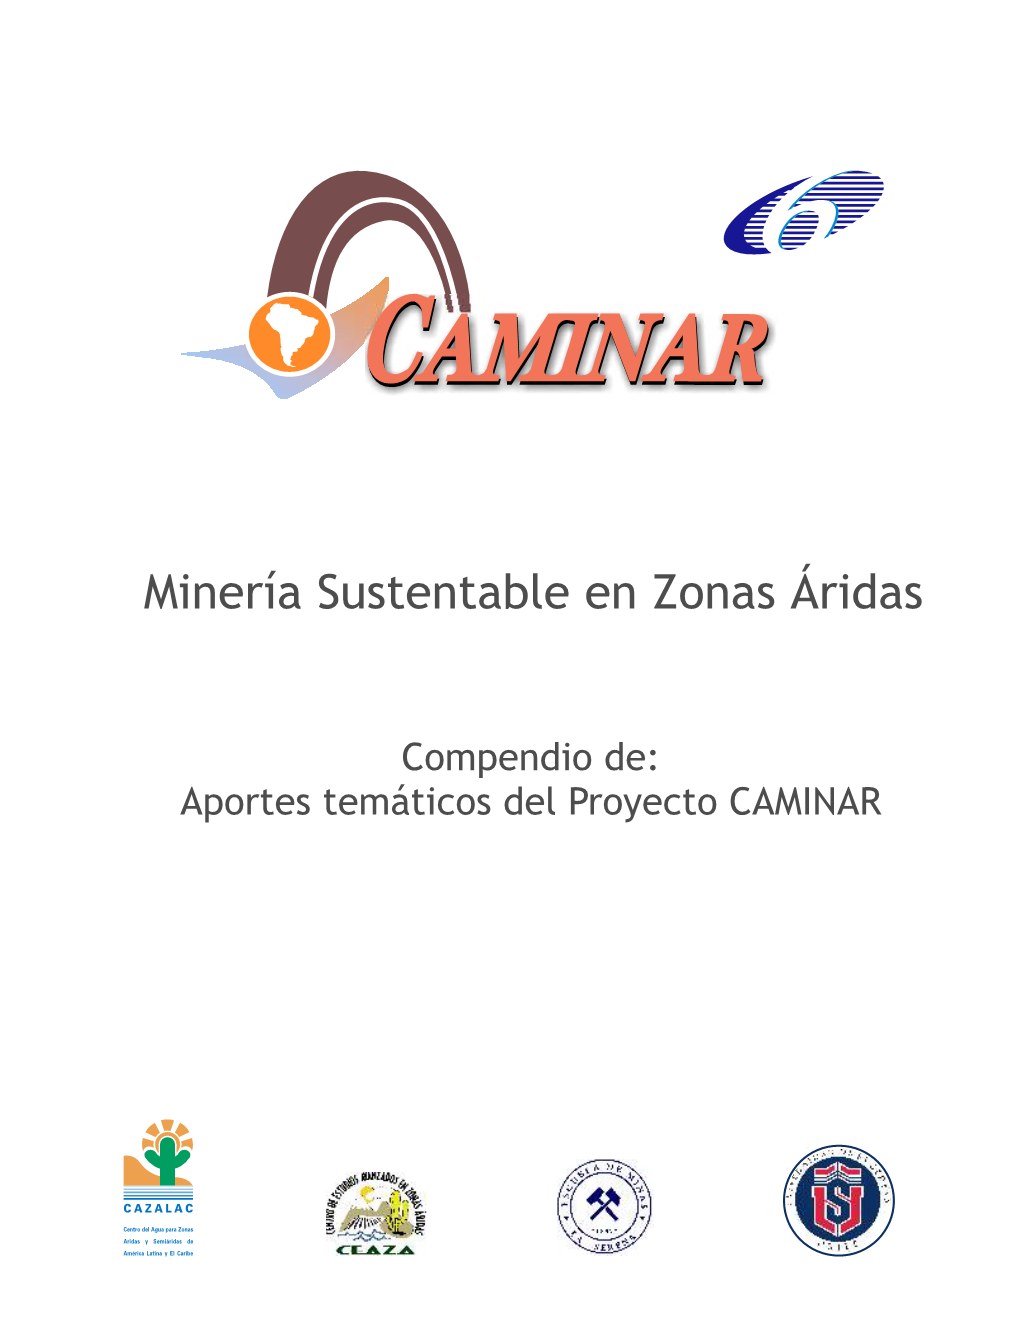 Minería Sustentable En Zonas Áridas. Aportes Temáticos Del Proyecto CAMINAR